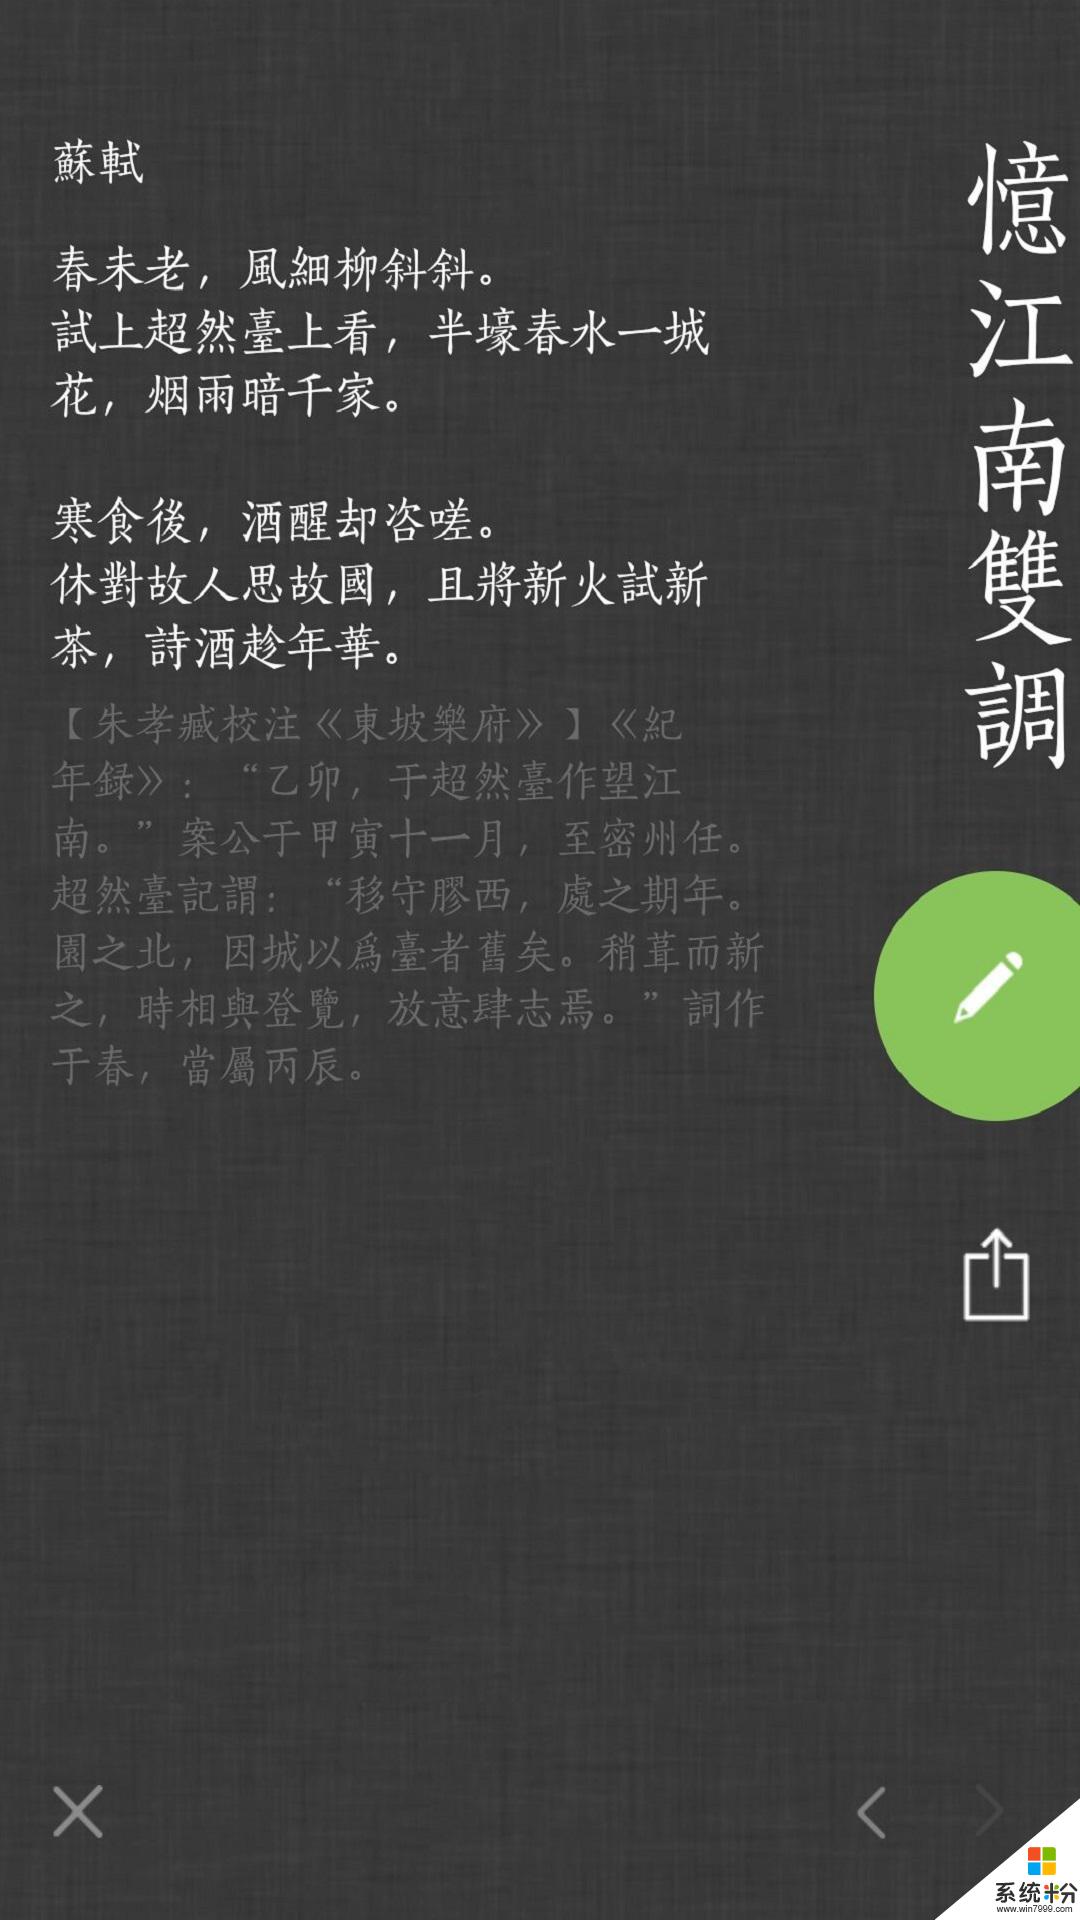 古词之韵美app官方下载_古词之韵美v20200202.1安卓版下载